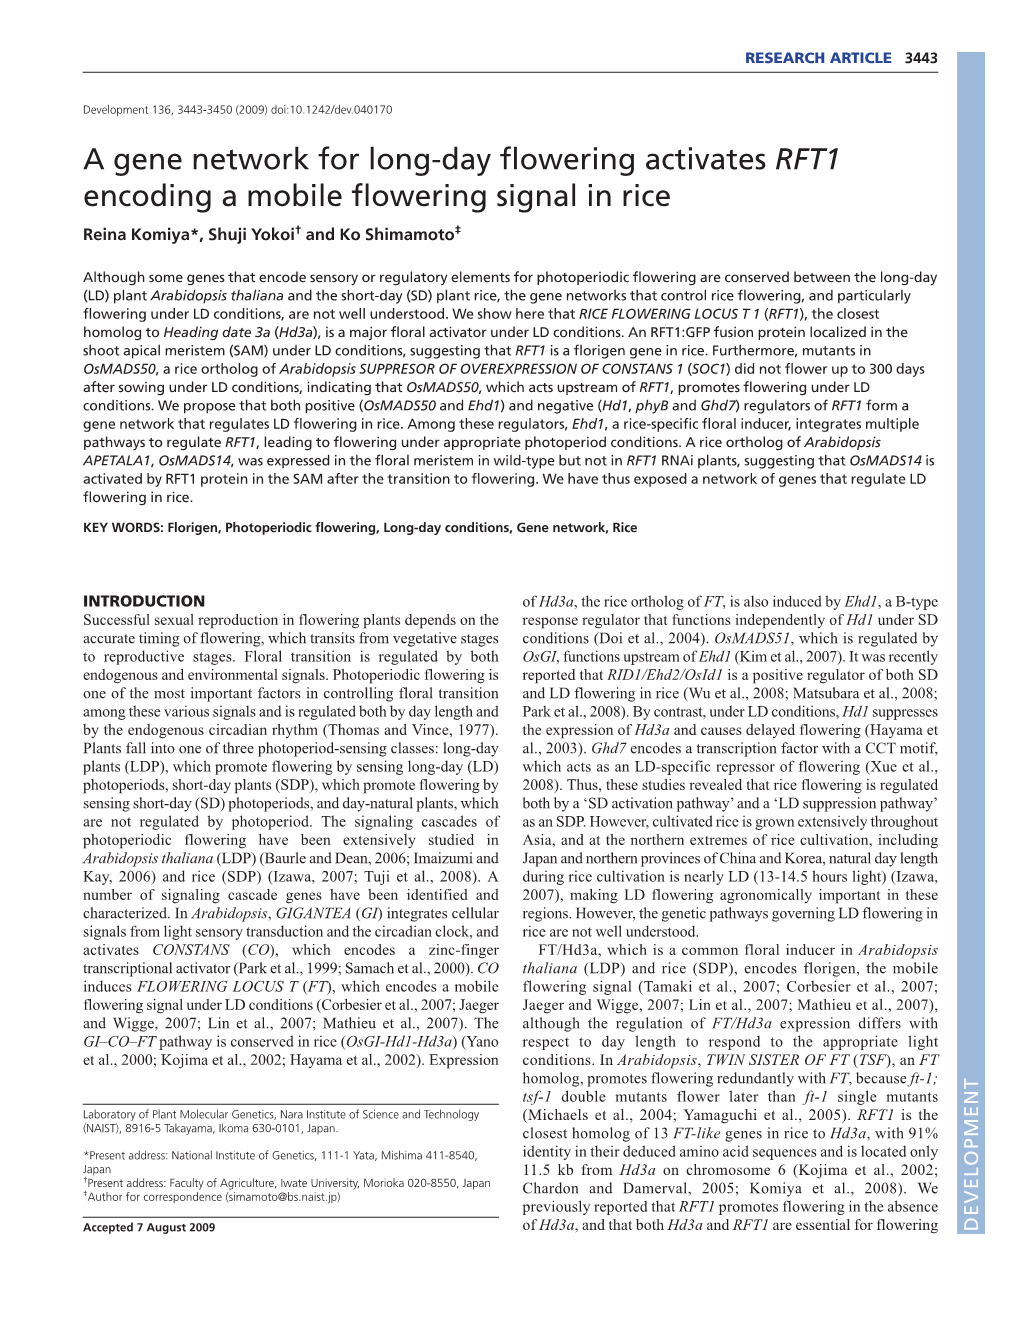 A Gene Network for Long-Day Flowering Activates RFT1 Encoding a Mobile Flowering Signal in Rice Reina Komiya*, Shuji Yokoi† and Ko Shimamoto‡